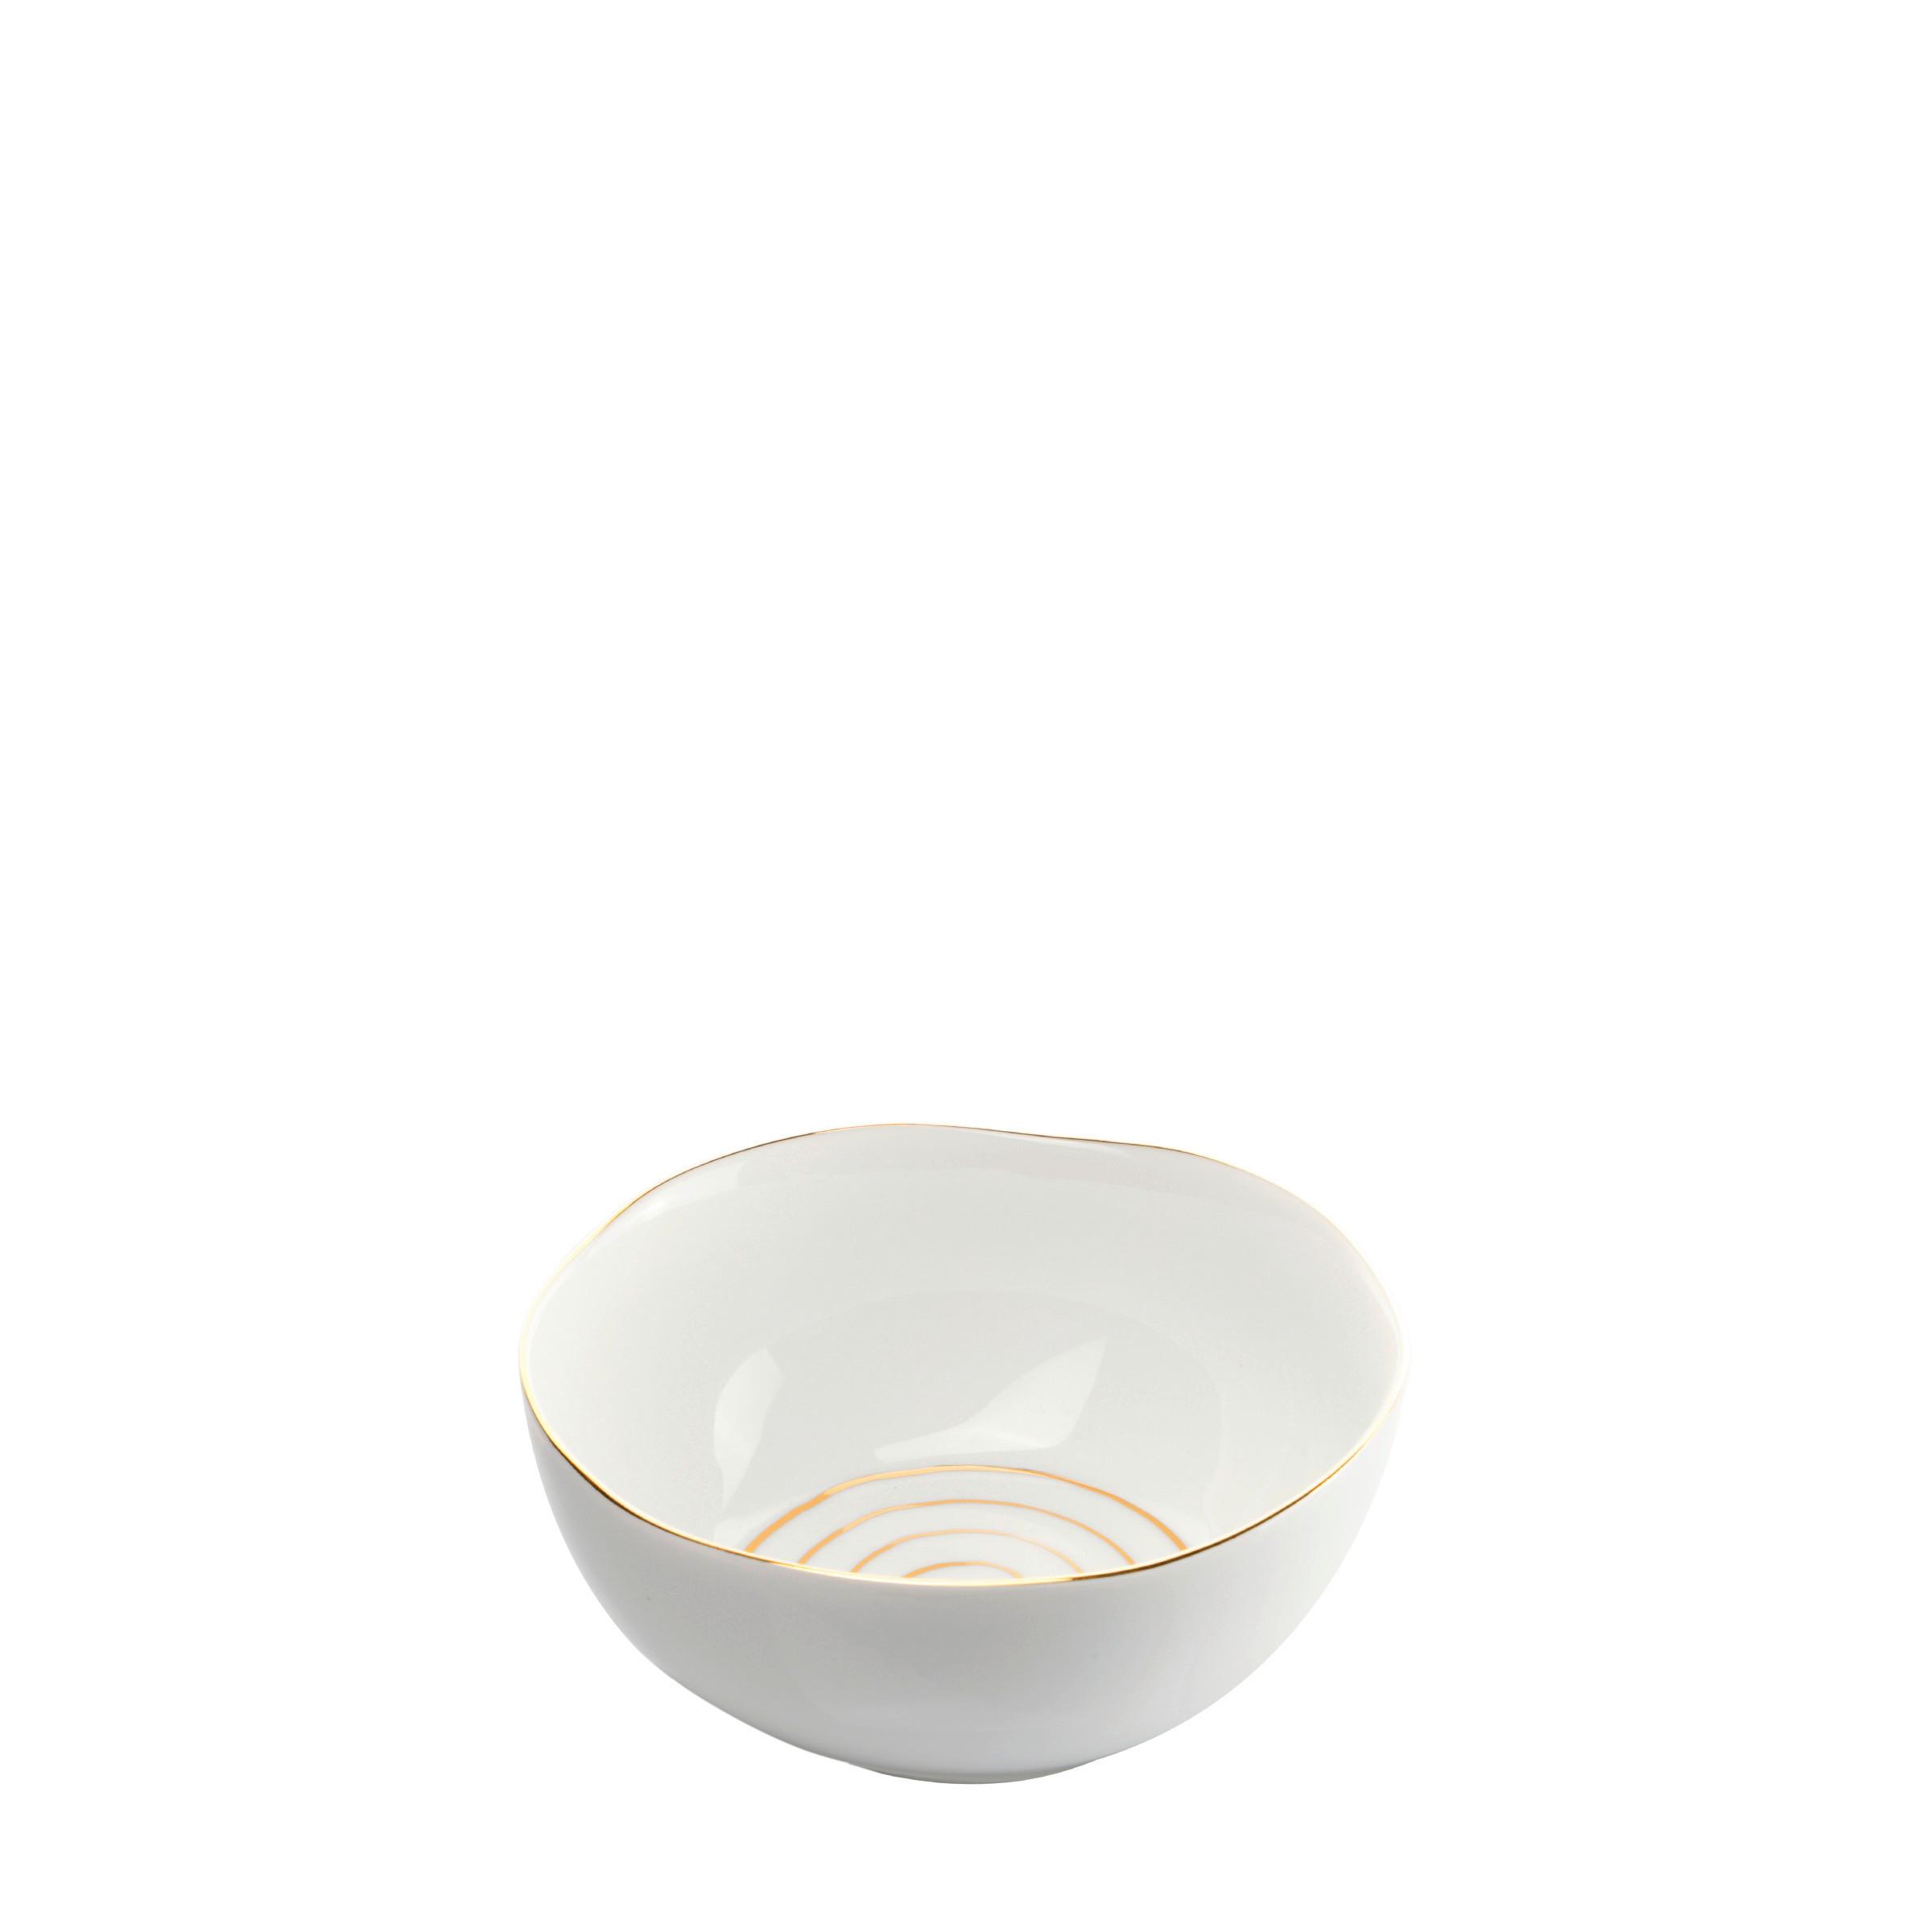 Zdjela Za Žitarice Onix - bijela/zlatne boje, Modern, keramika (15/7cm) - Premium Living